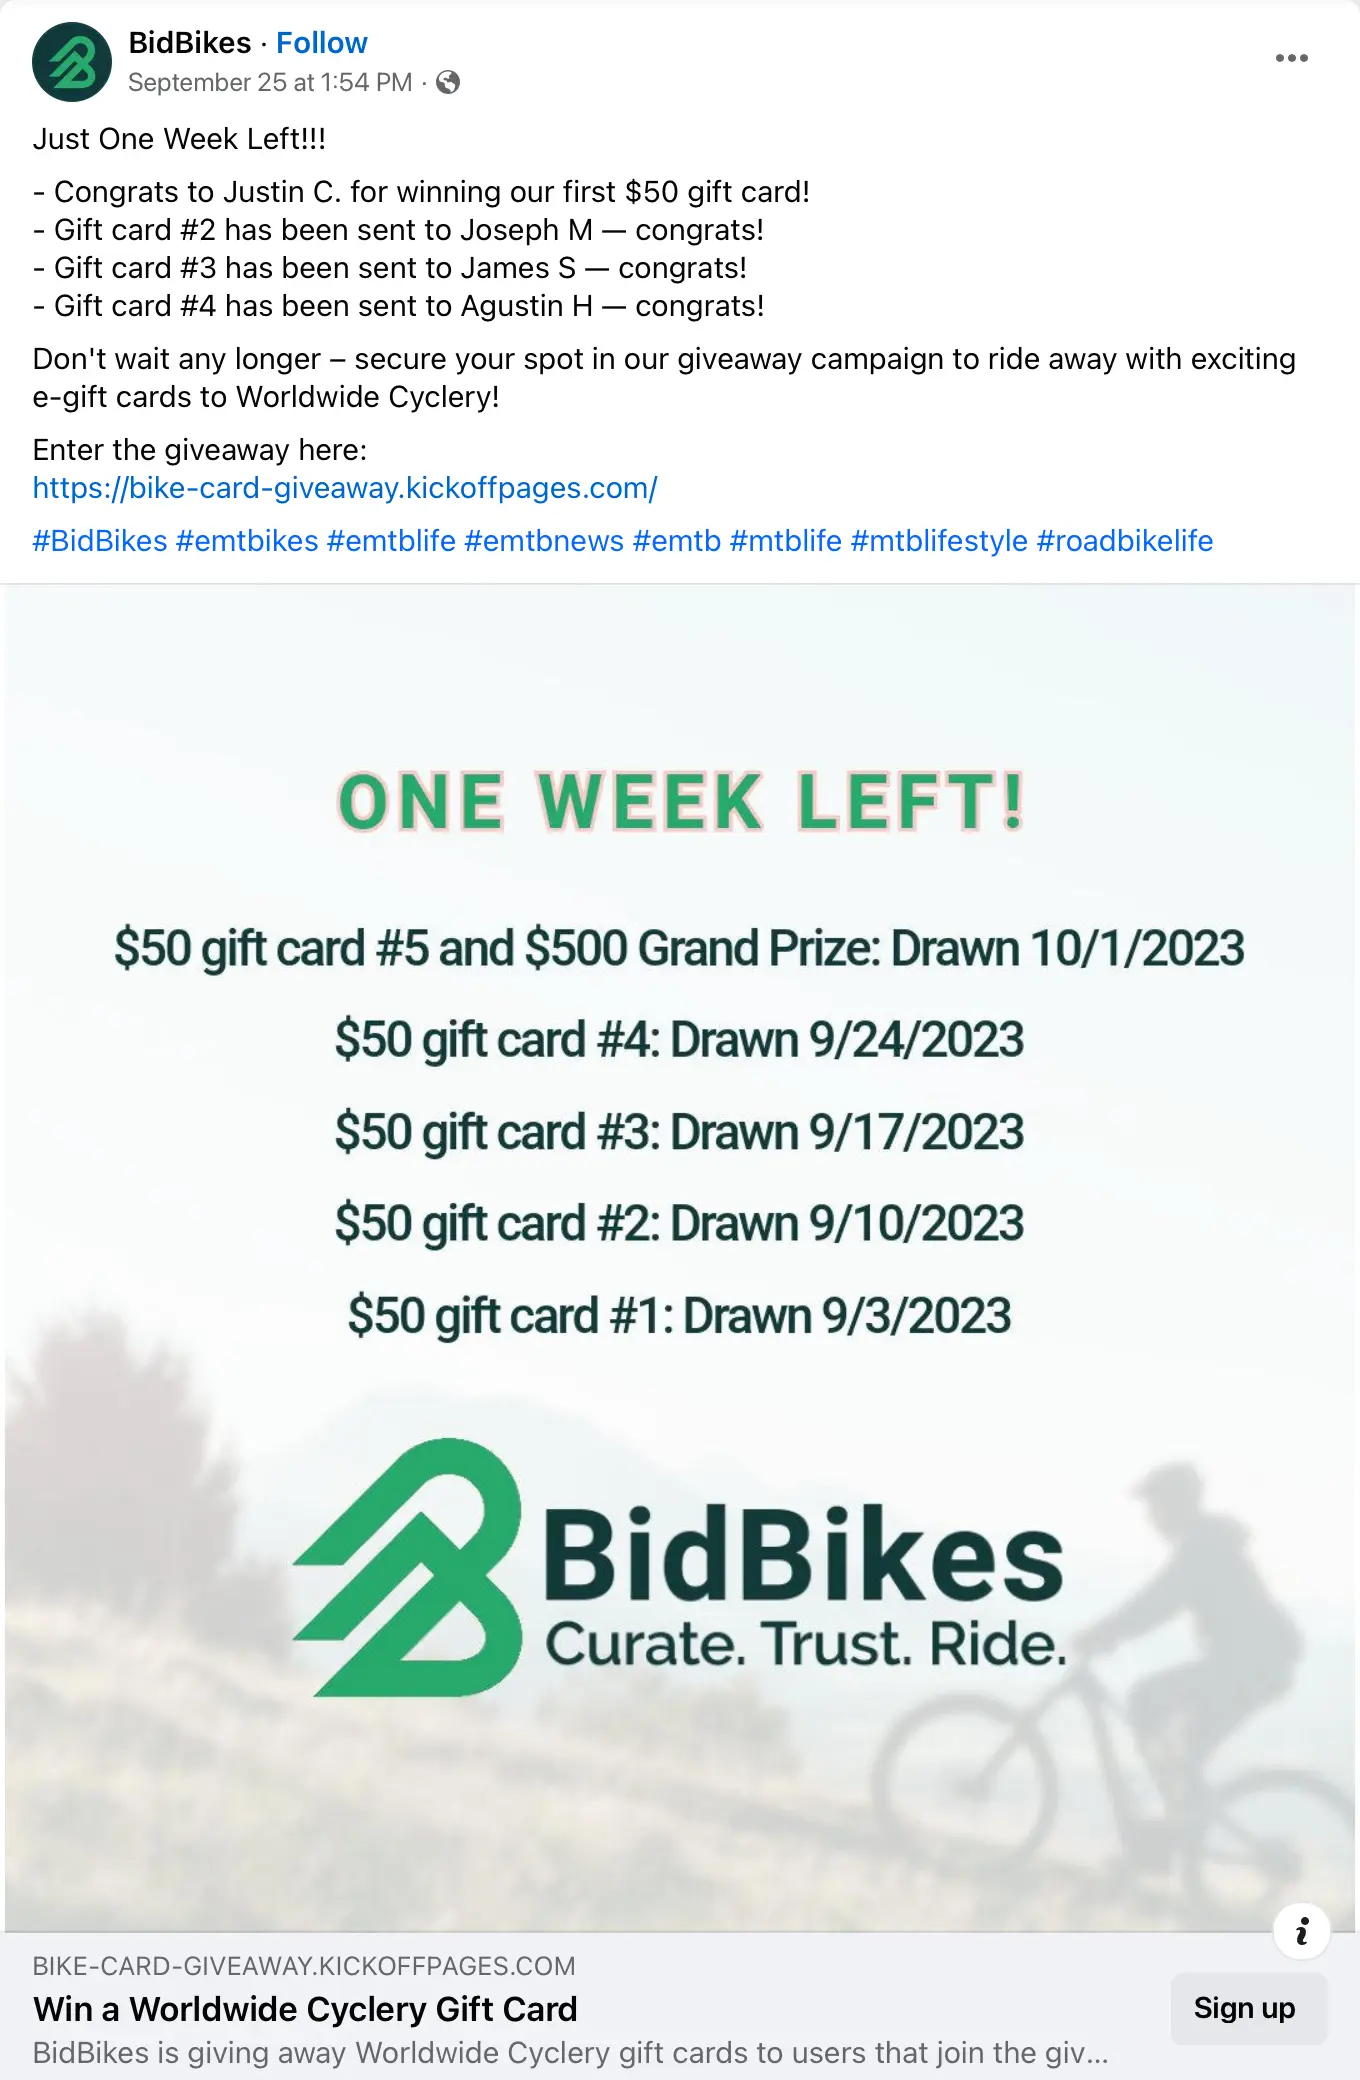 bidbikes giveaway example